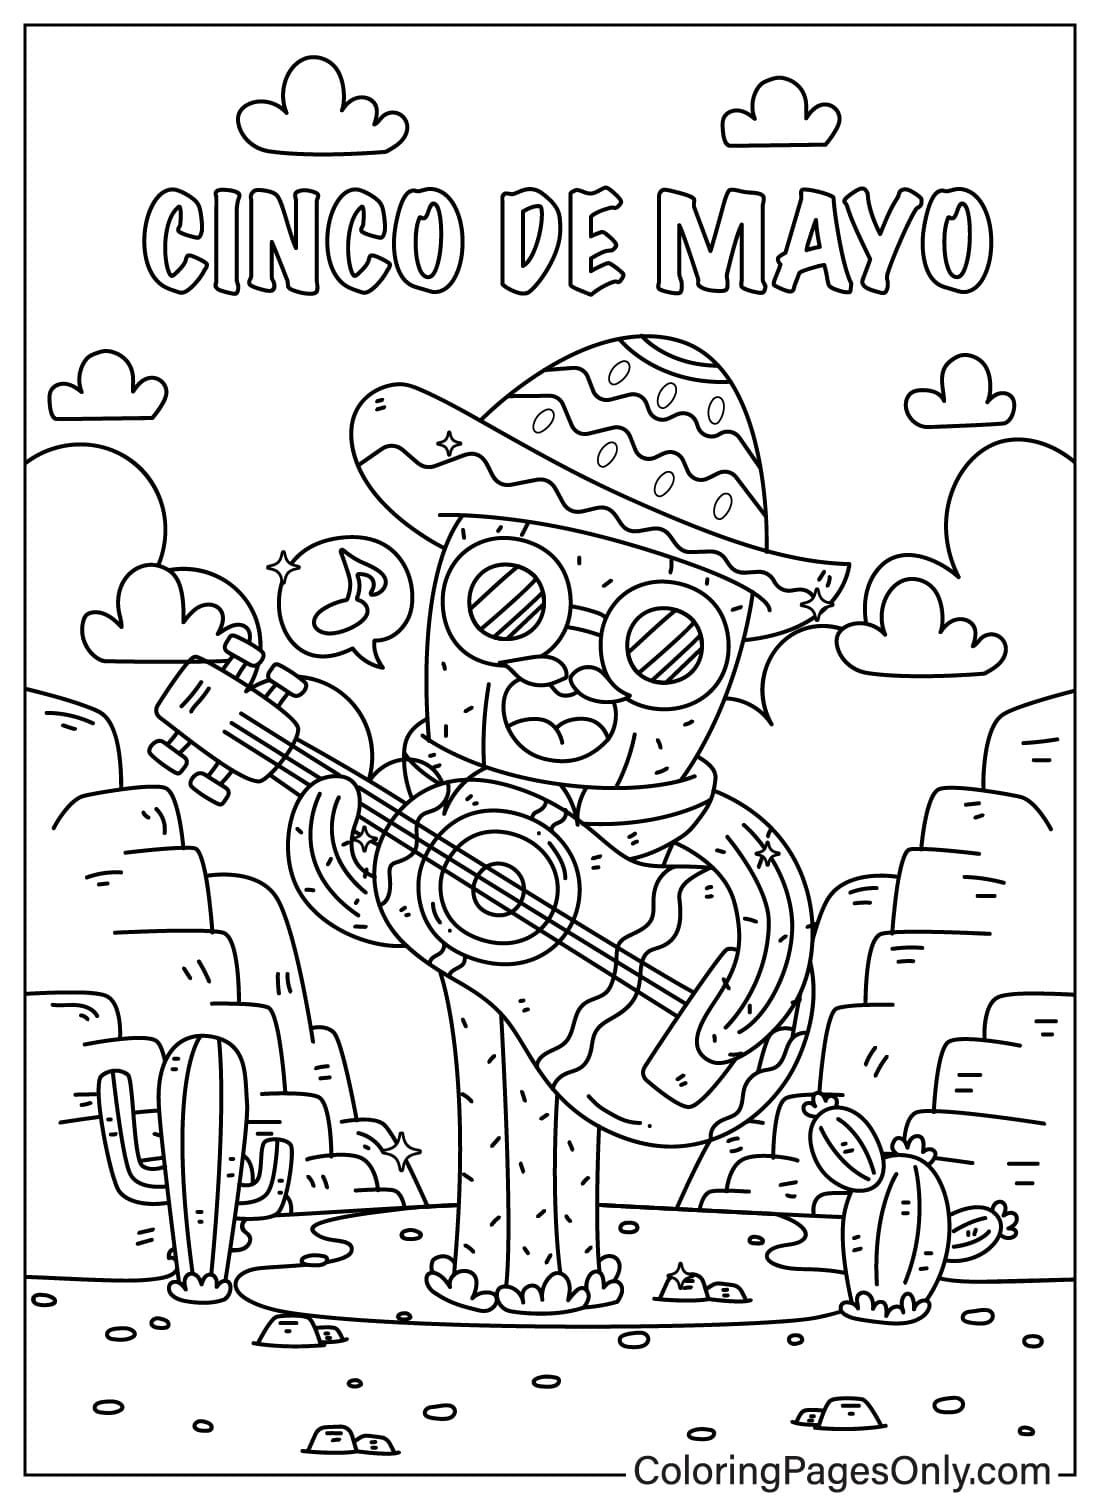 Cinco De Mayo Le cactus joue en chantant de Cinco De Mayo